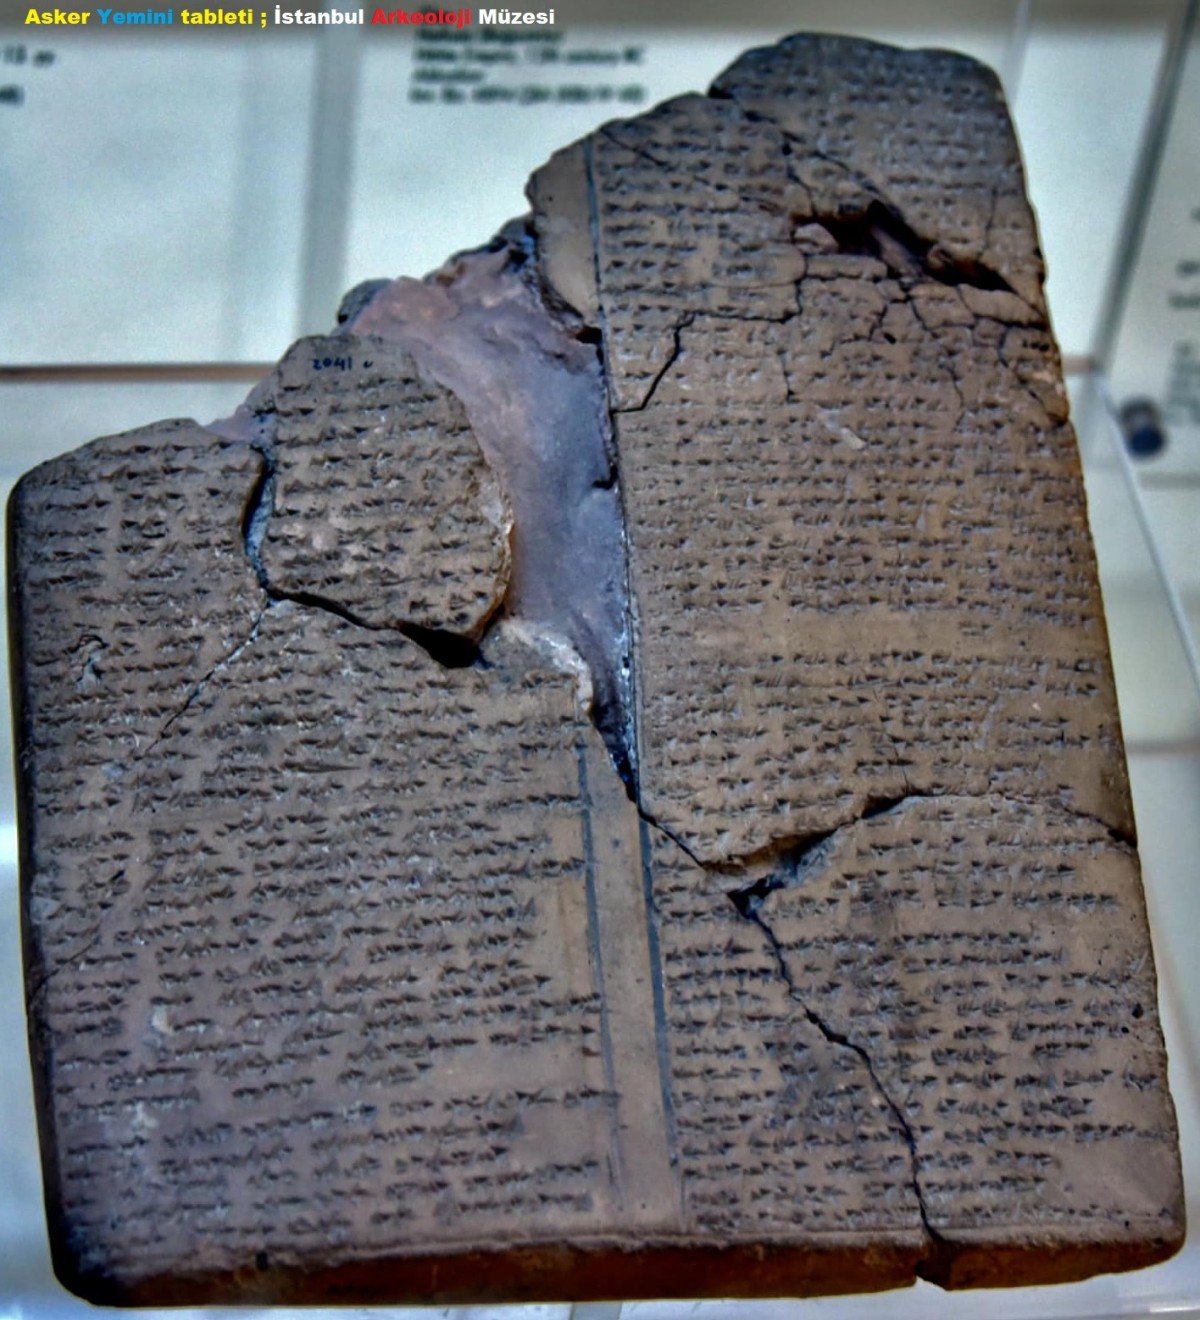 Asker Yemini tableti ; İstanbul Arkeoloji Müzesi